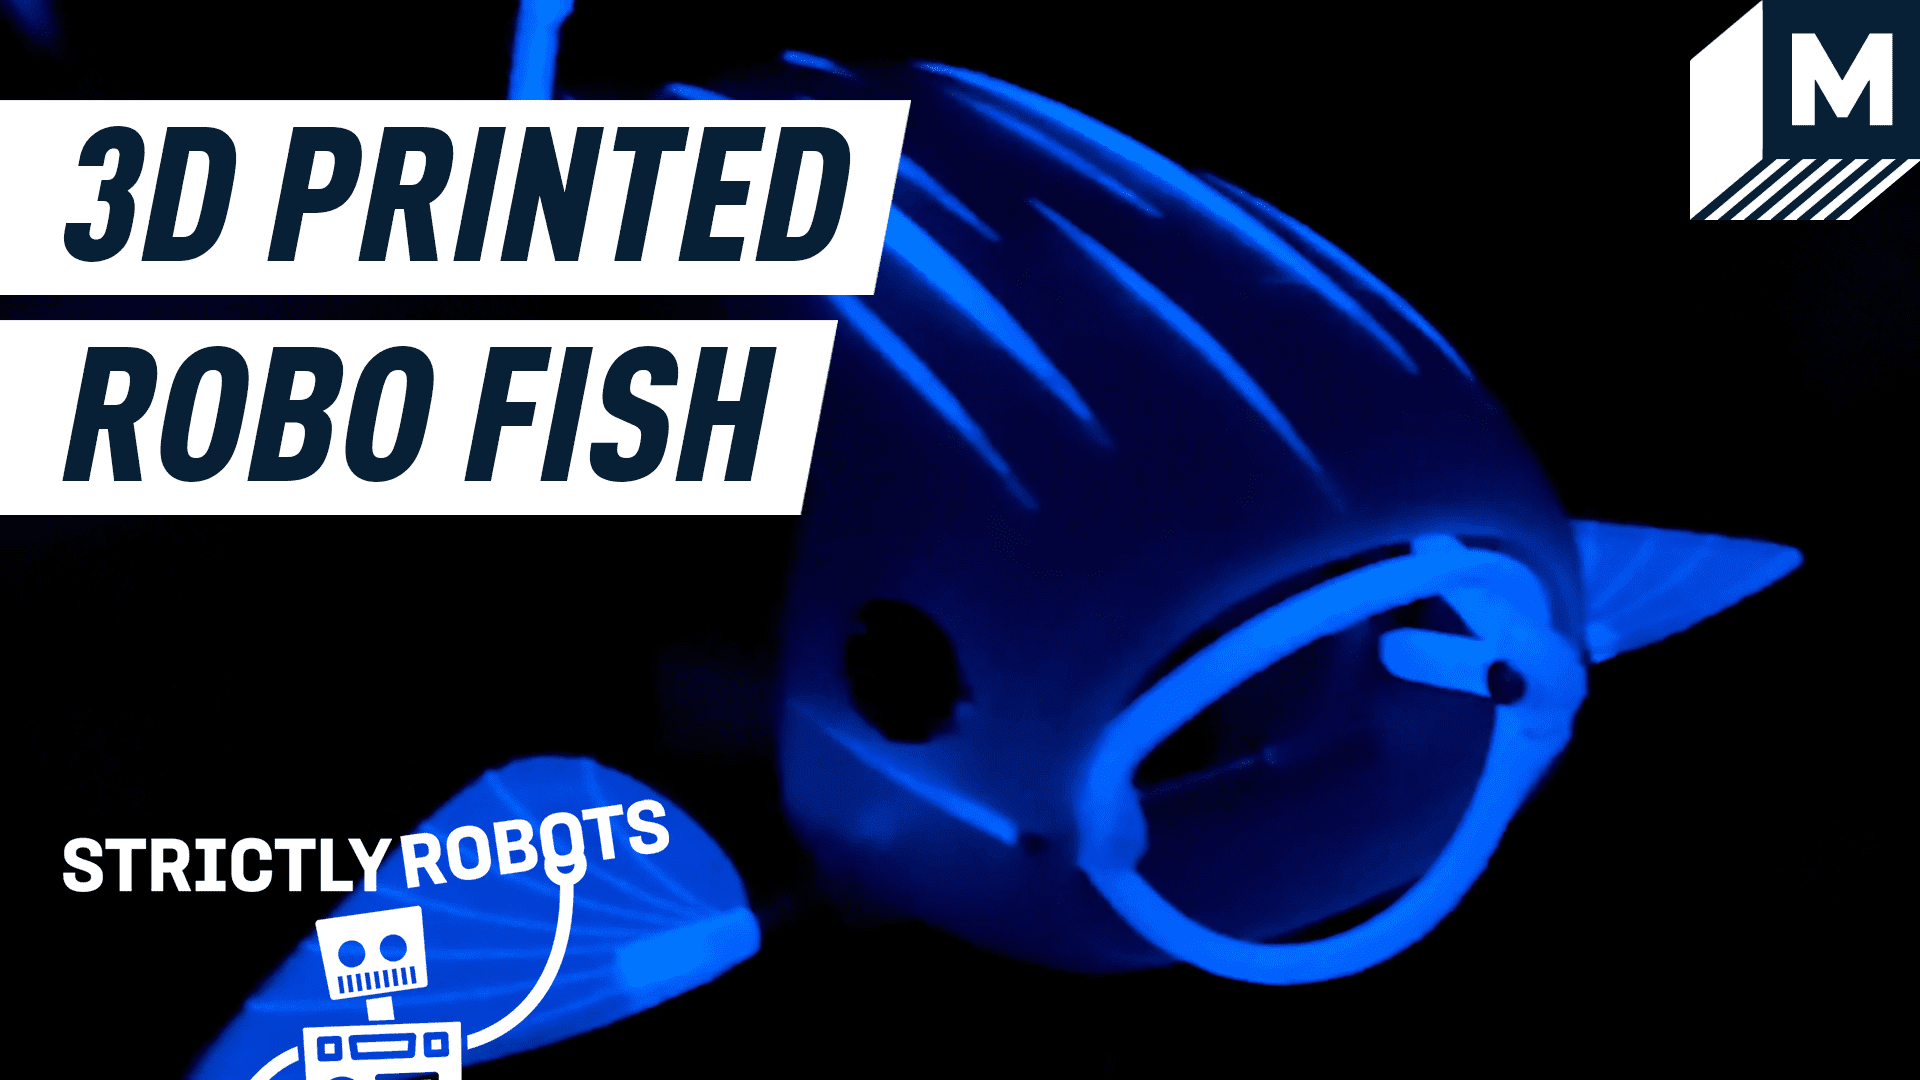 Karanlıkta parlayan bir robot balık